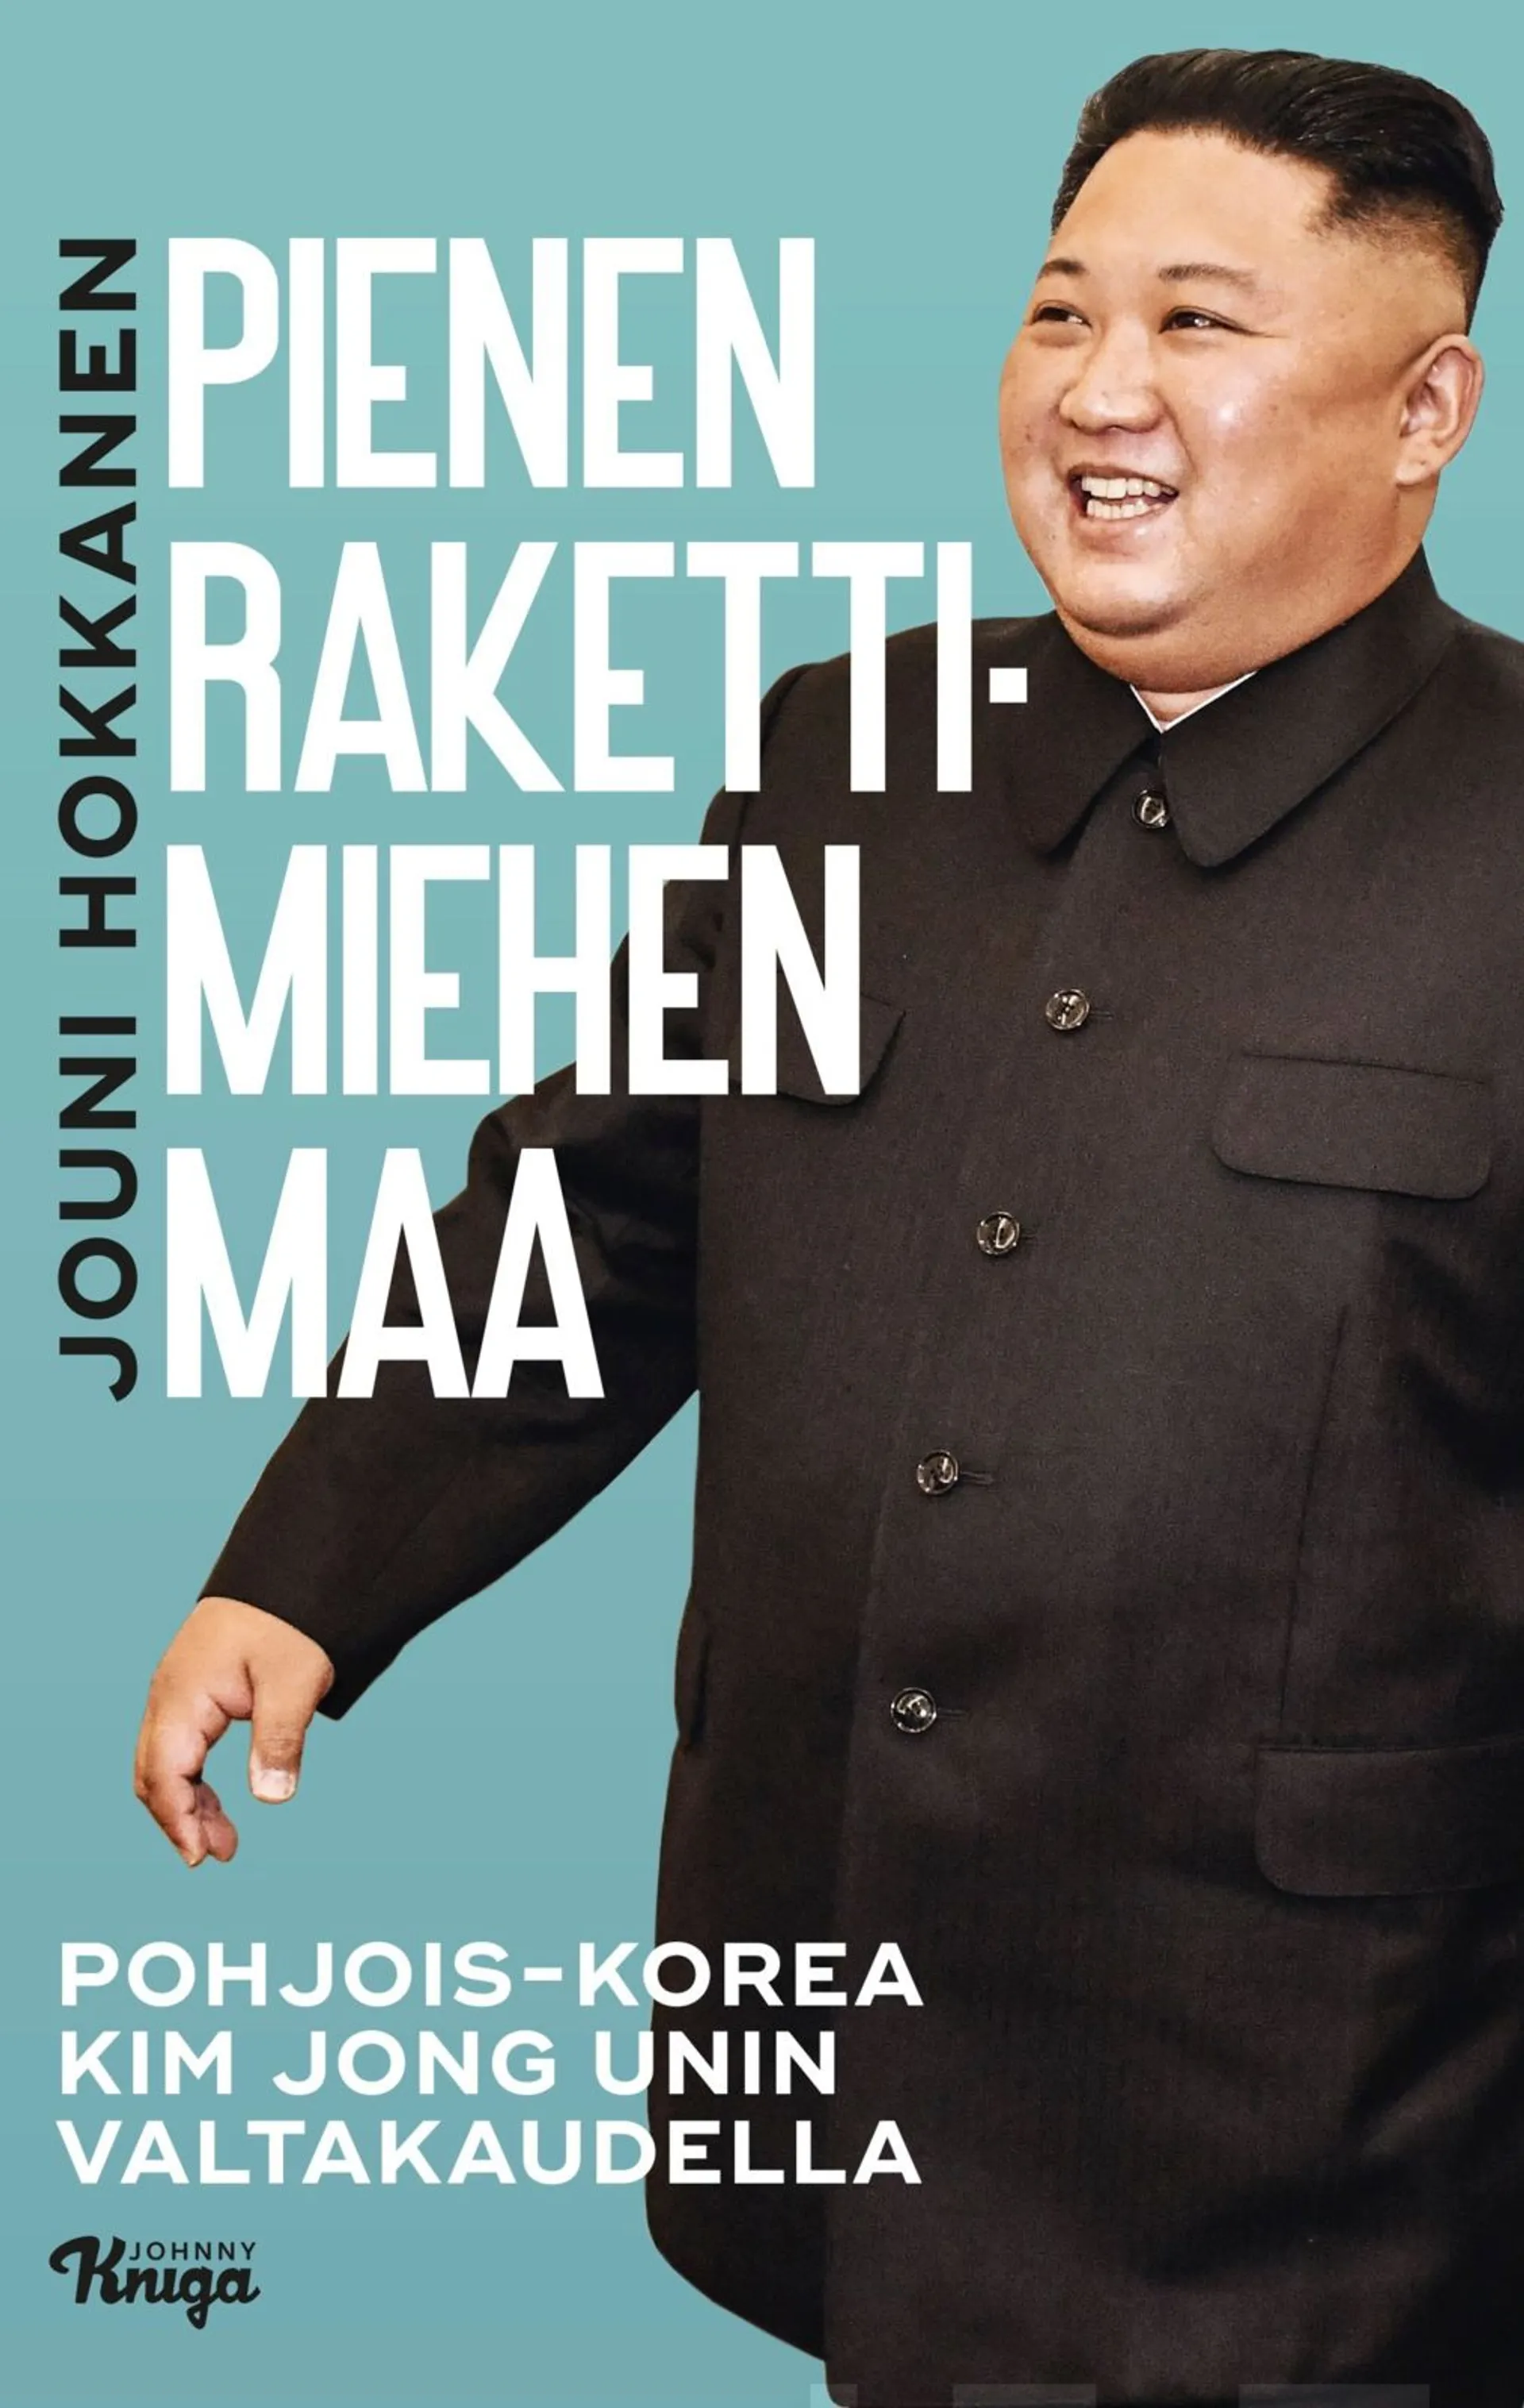 Hokkanen, Pienen rakettimiehen maa - Pohjois-Korea Kim Jong-unin valtakaudella